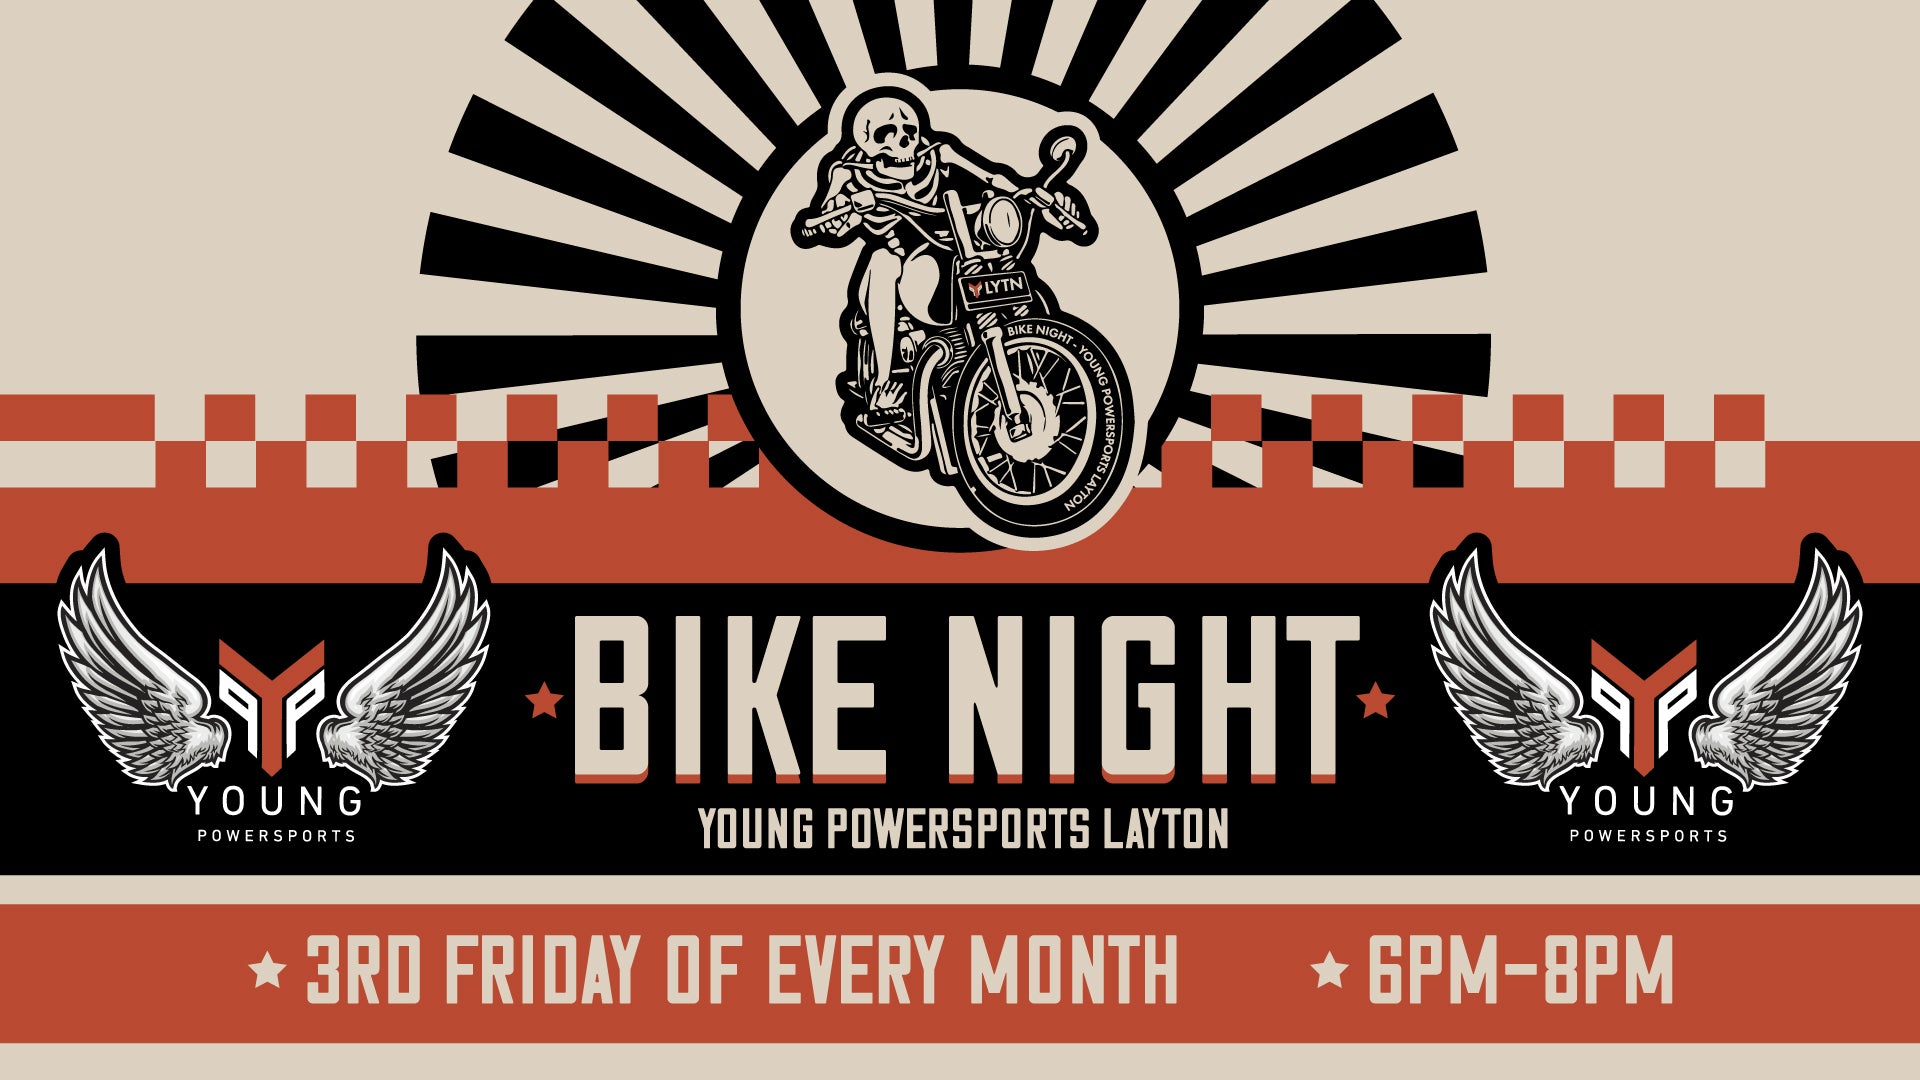 Bike Night at Young Powersports Layton